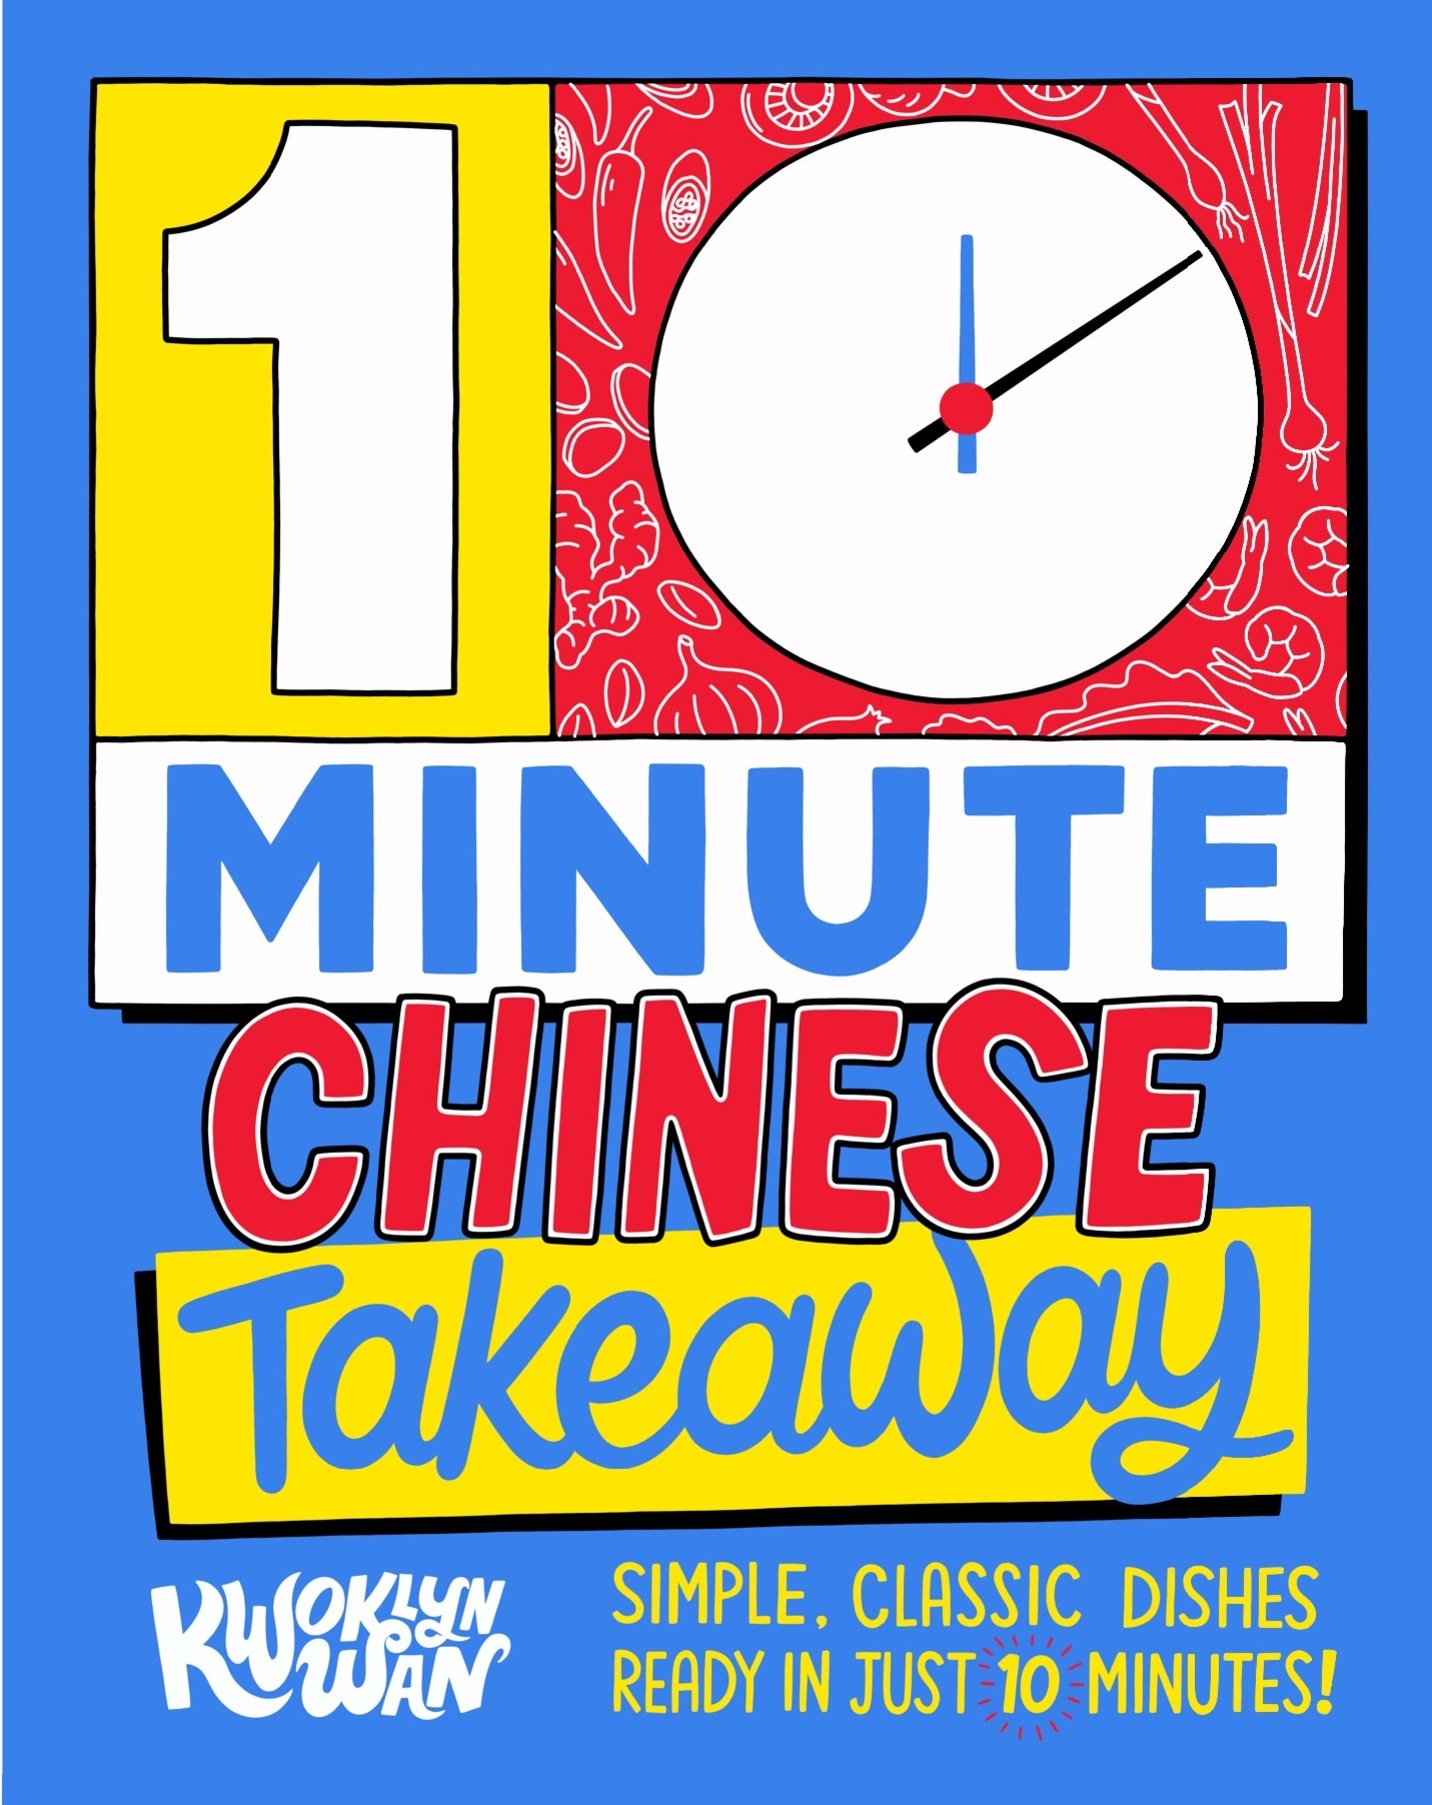 10 Minute Takeaway | Kwoklyn Wan